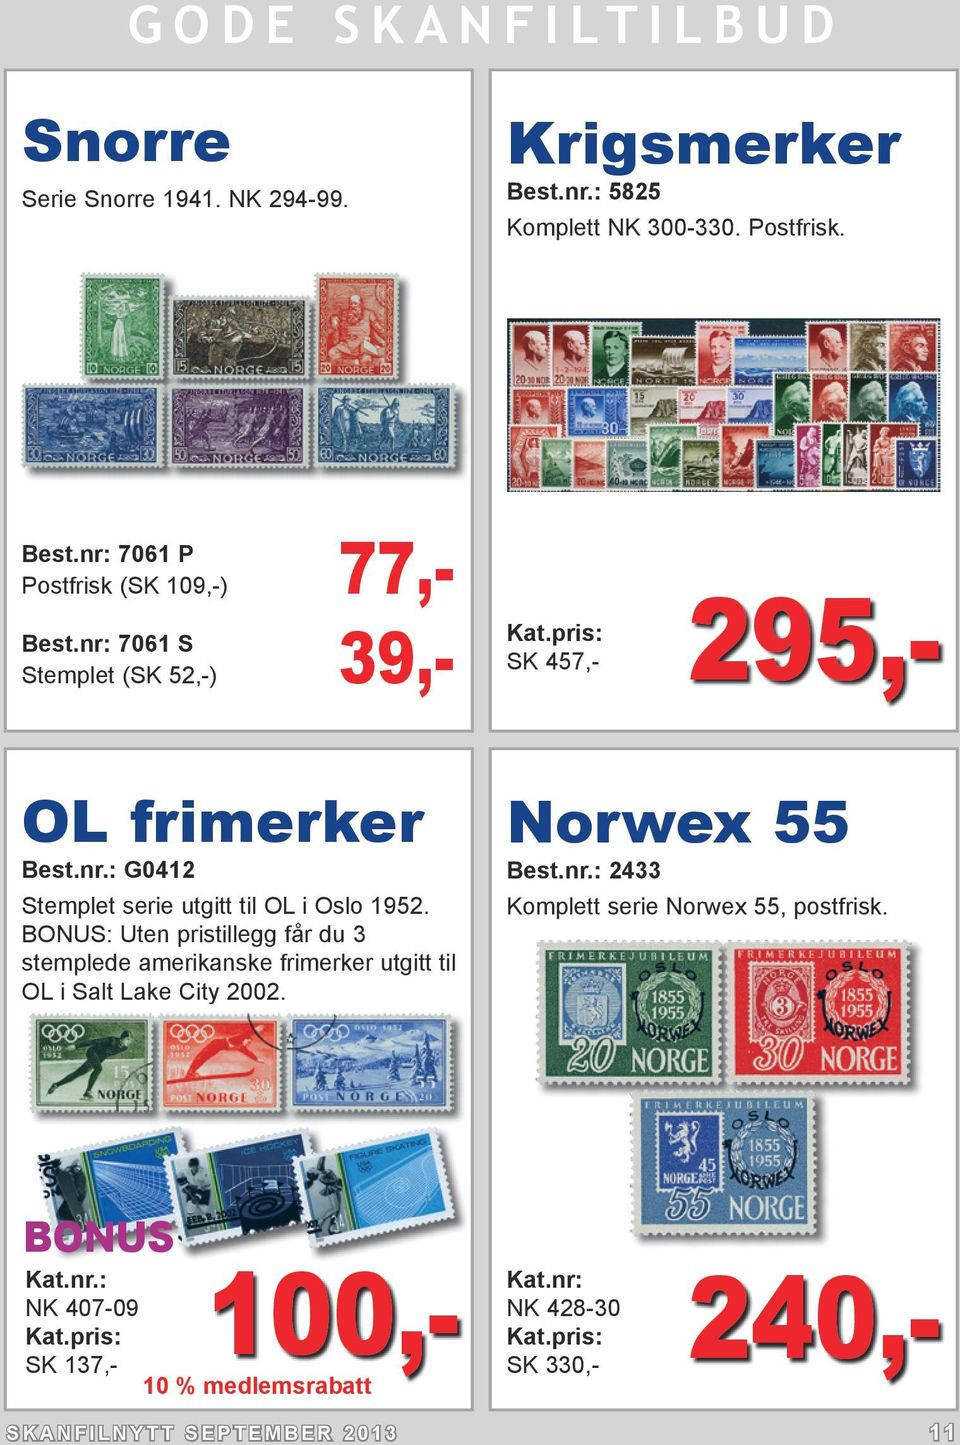 BONUS: Uten pristillegg får du 3 stemplede amerikanske frimerker utgitt til OL i Salt Lake City 2002. Norwex 55 Best.nr.